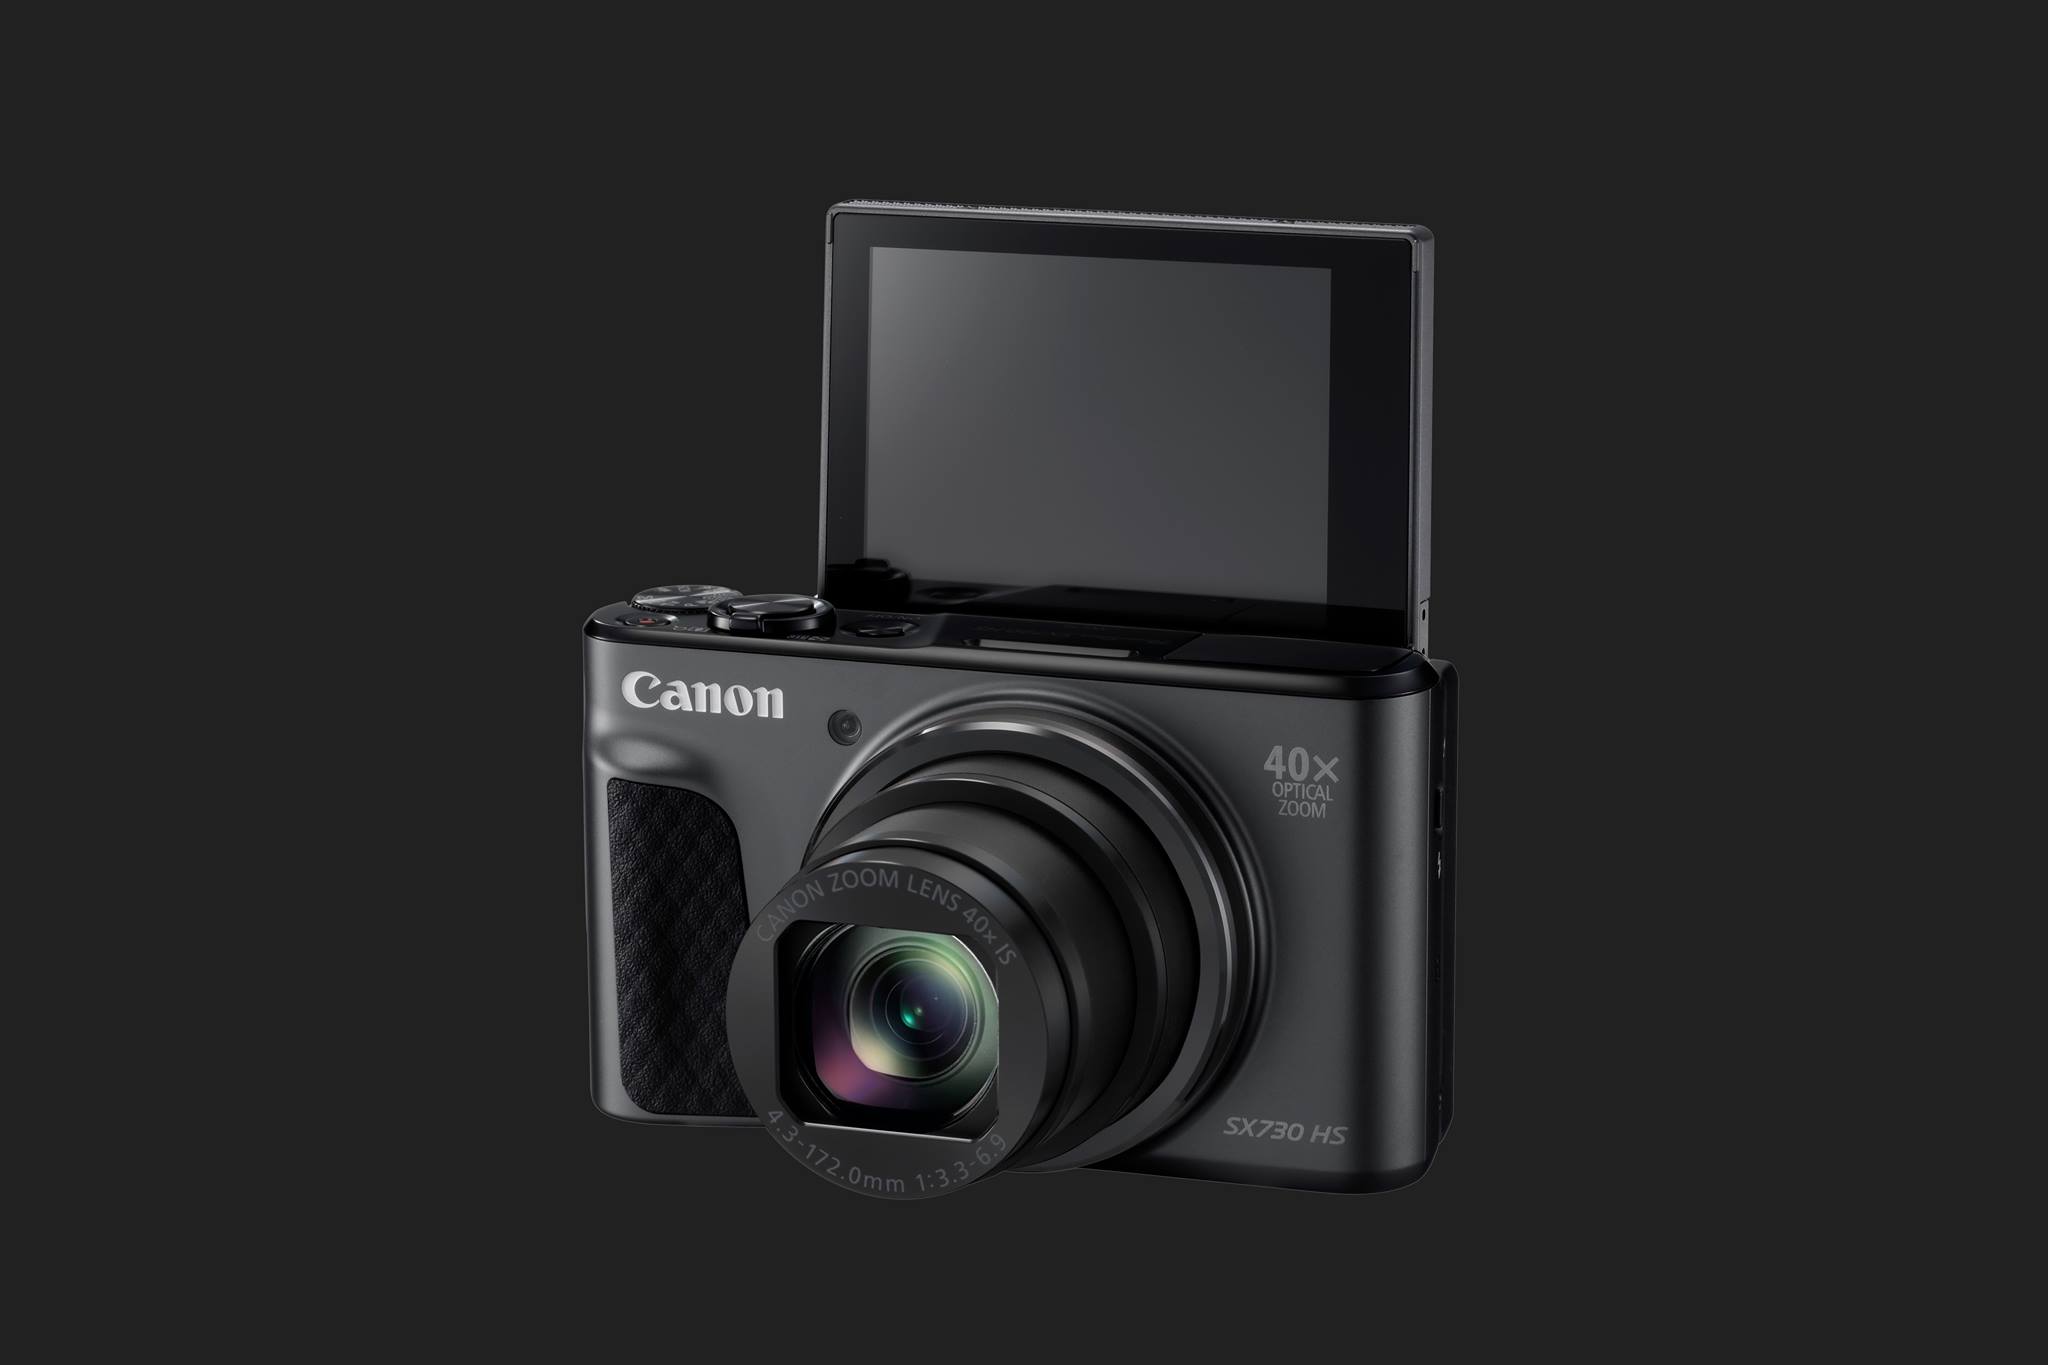 Canon PowerShot SX730 HS|Canon PowerShot SX730 HS||